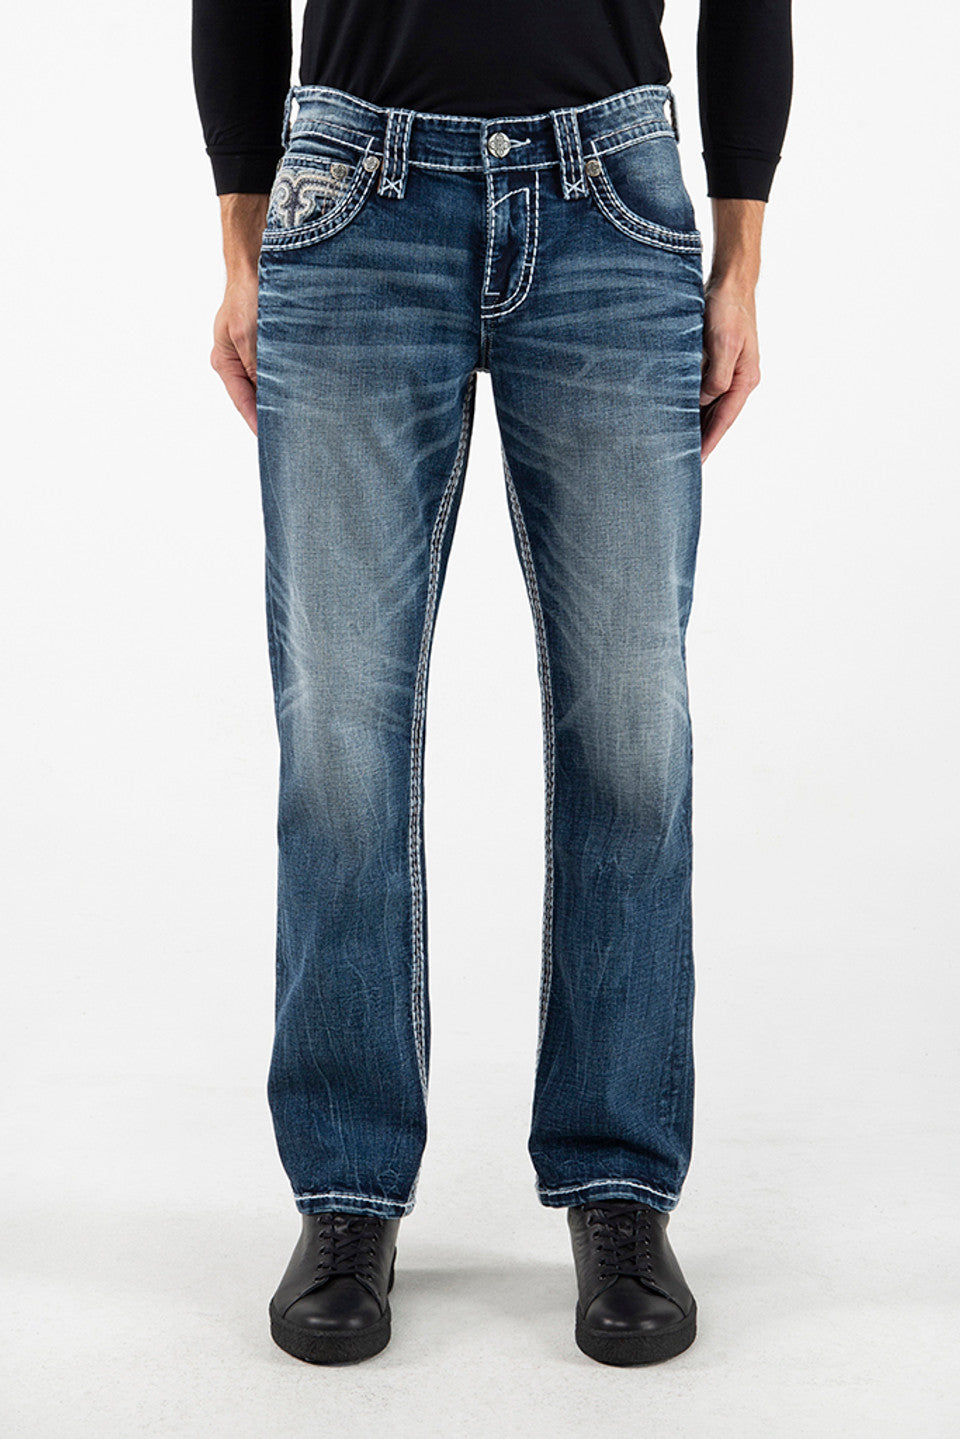 Rock Revival Men's Tabby J201 Straight Jeans